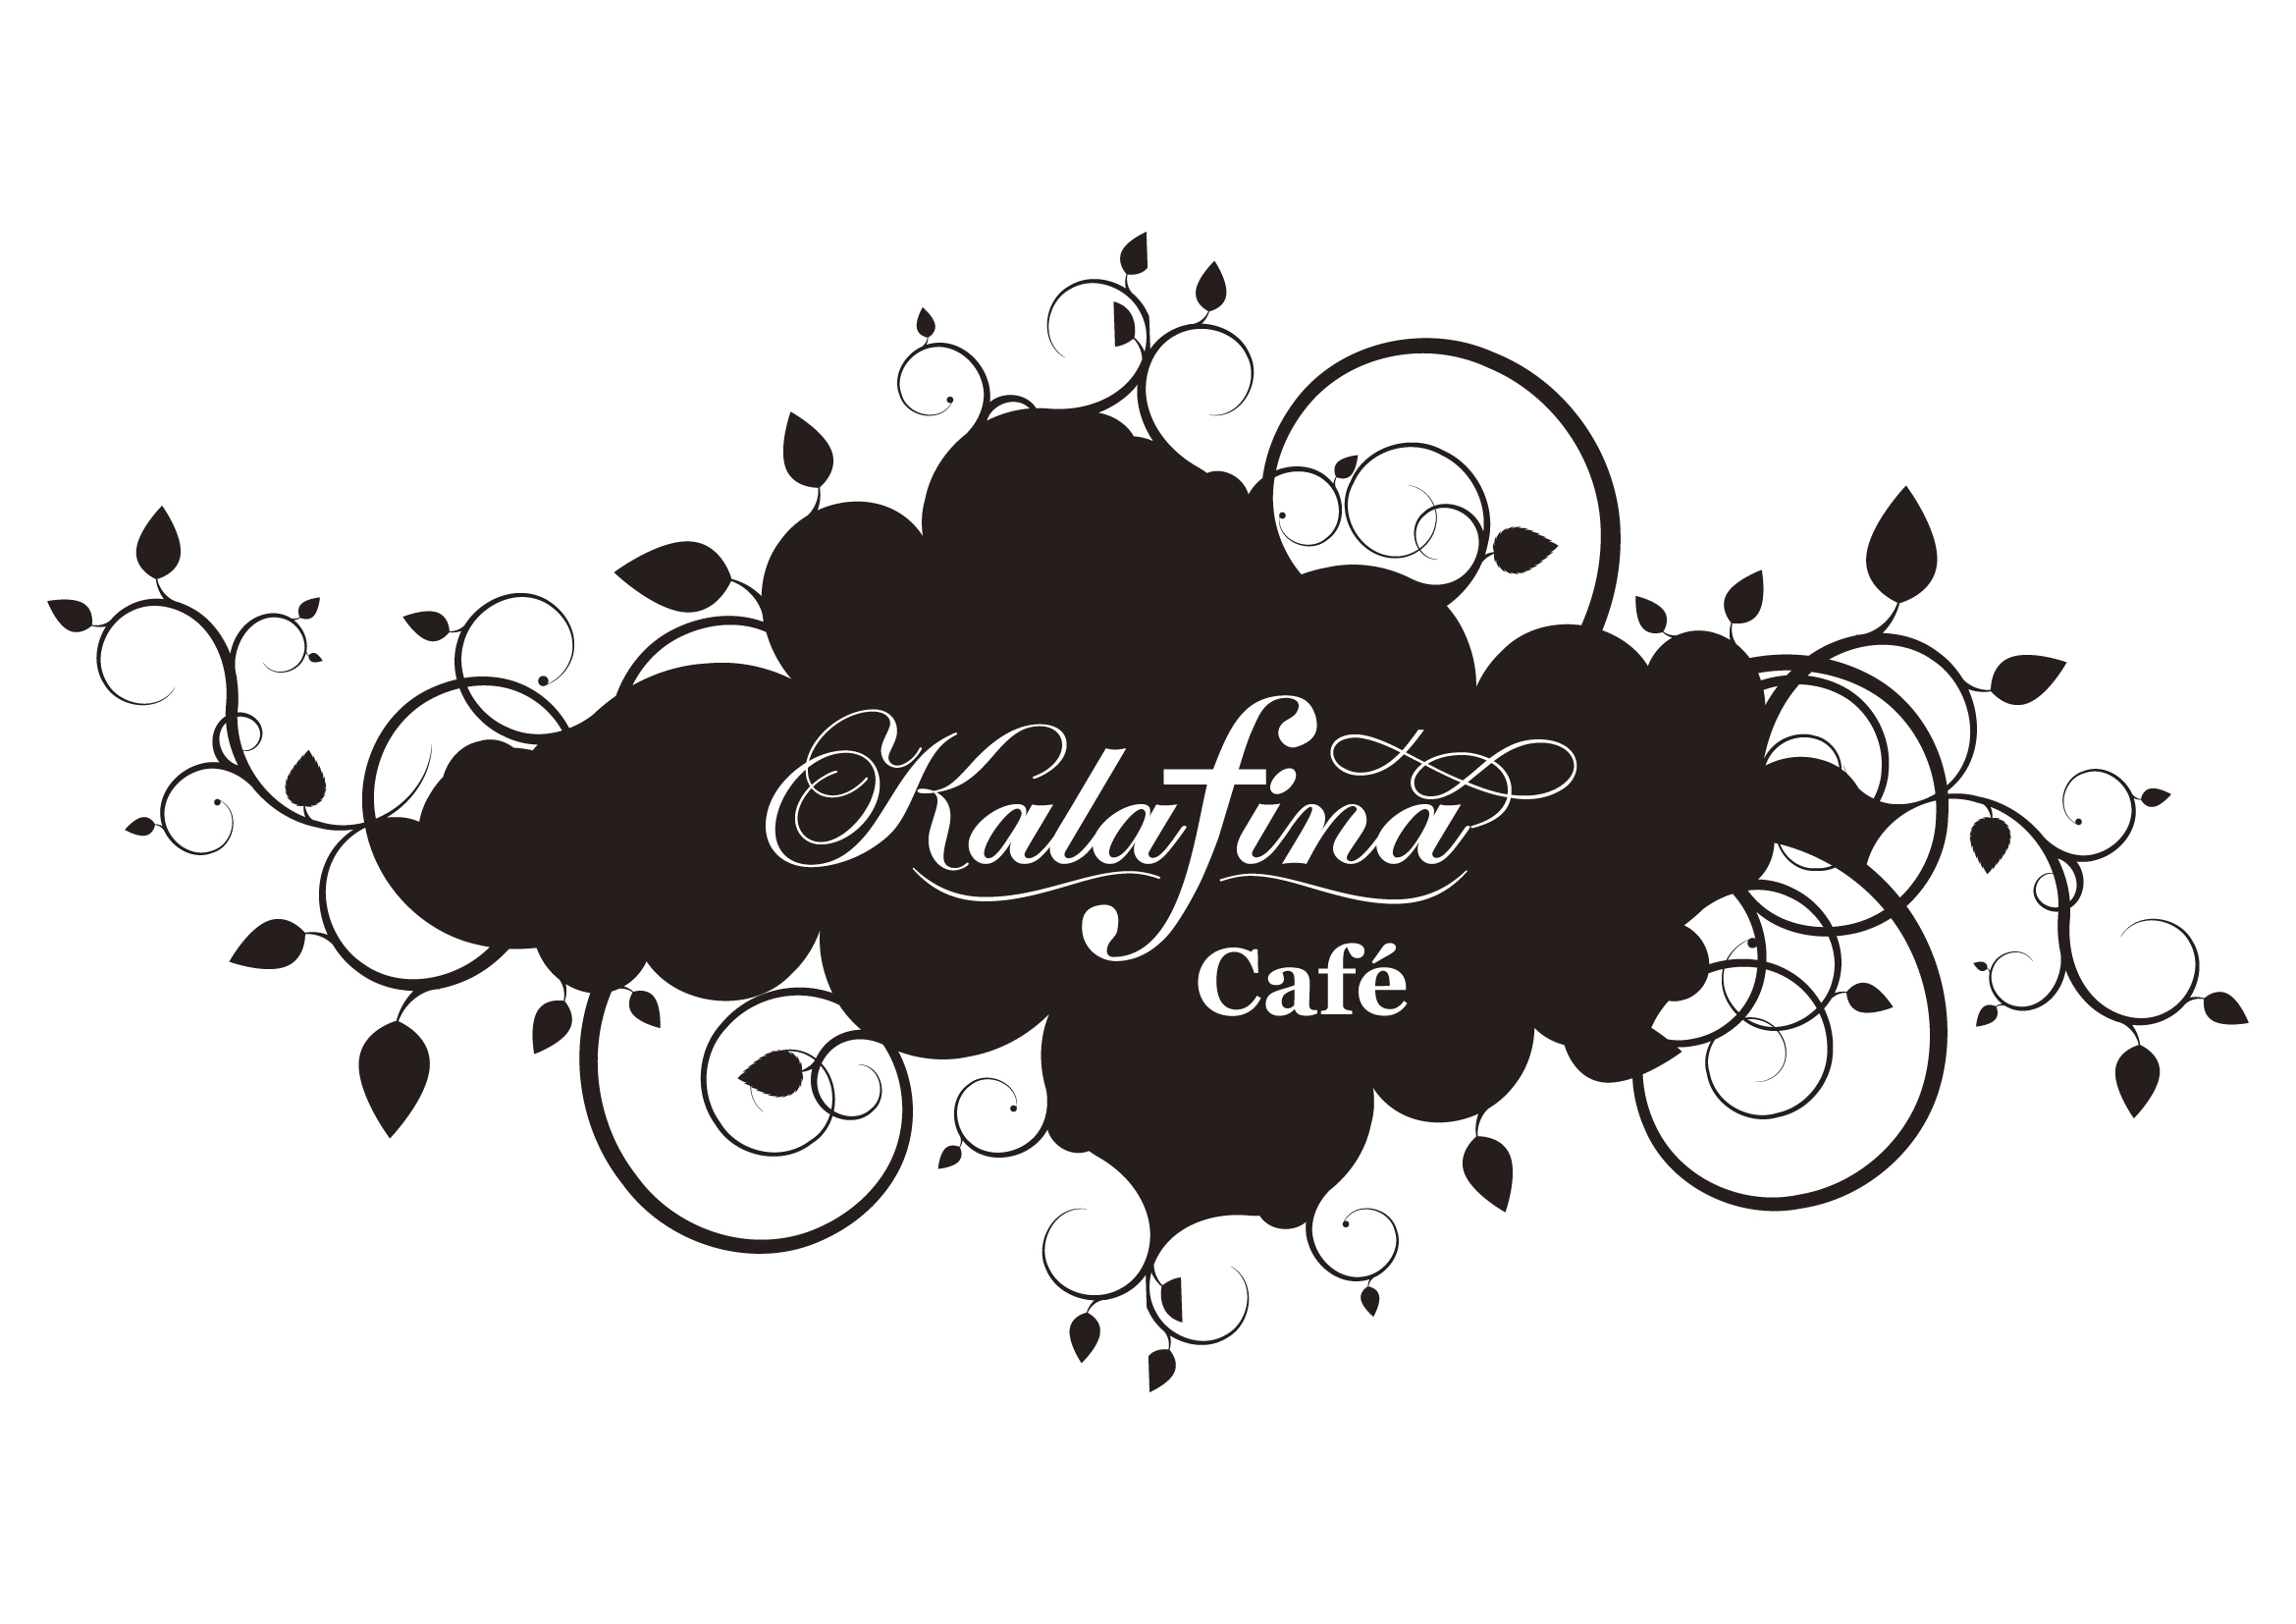 Hakka Online Shop Press Blog Moph Kalafina Cafe